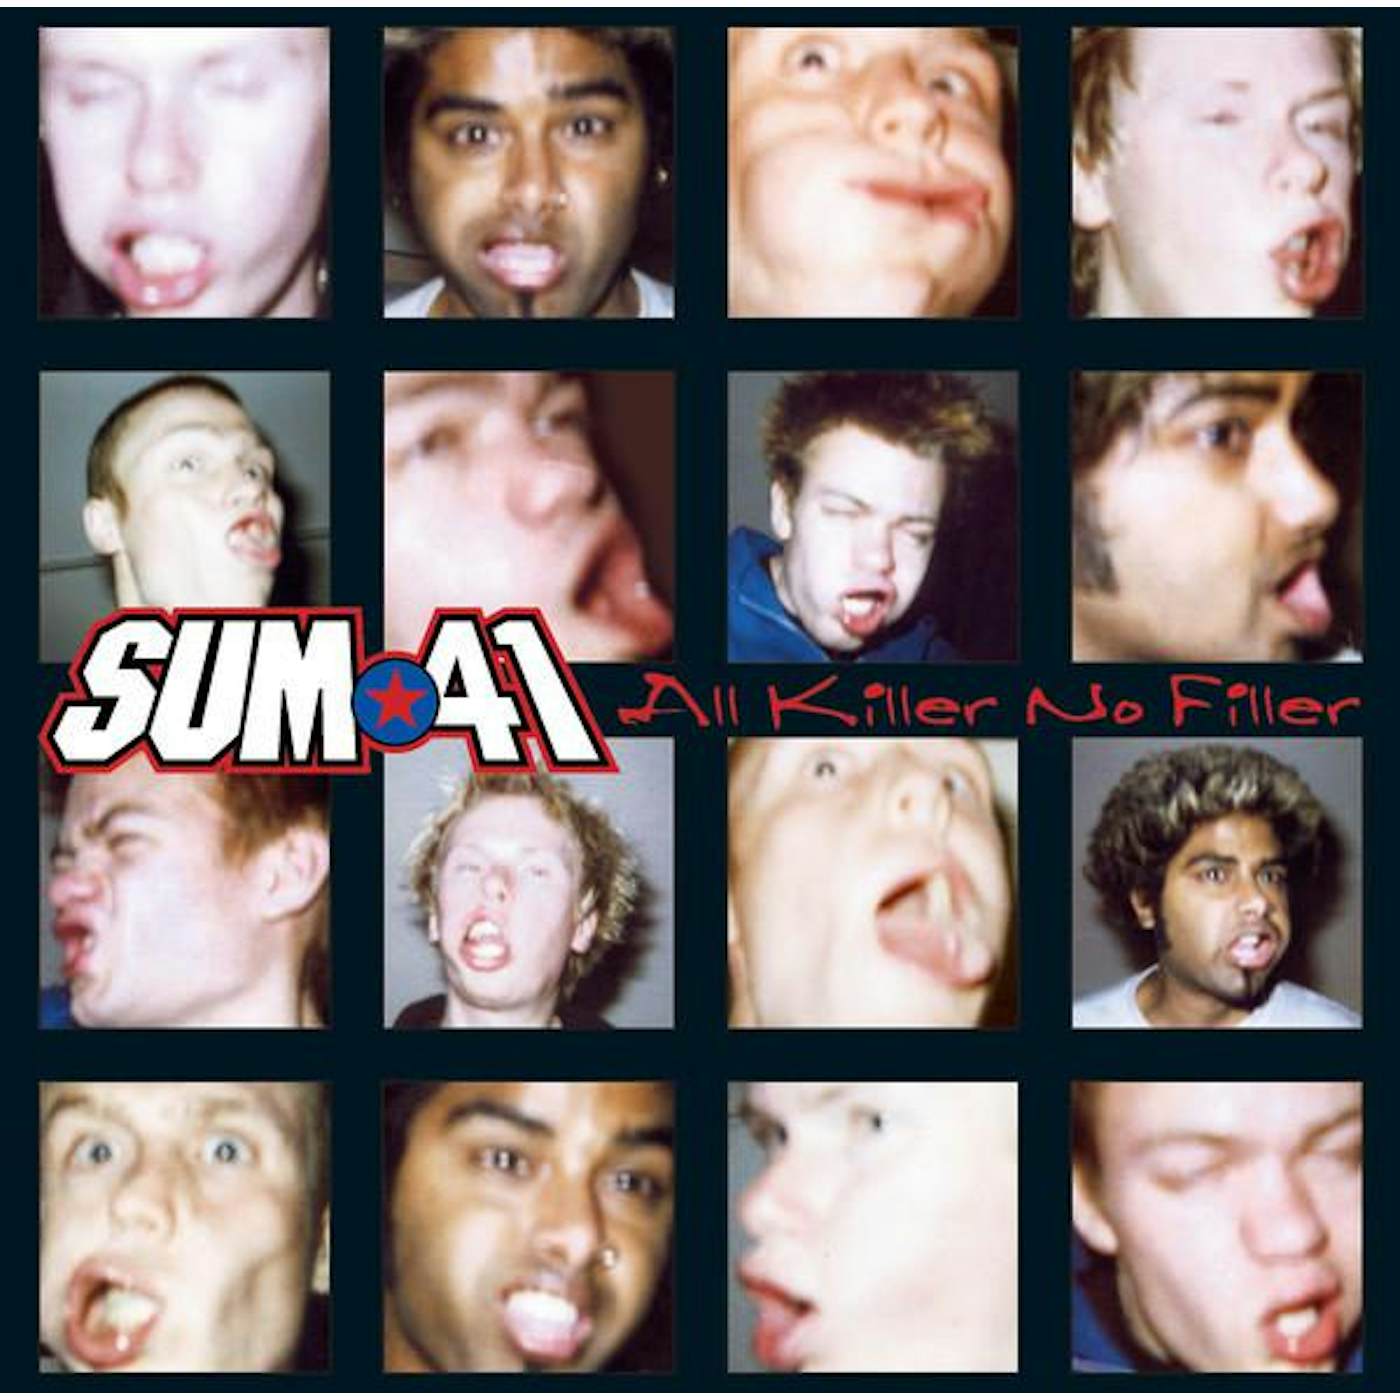 Sum 41 ALL KILLER NO FILLER CD